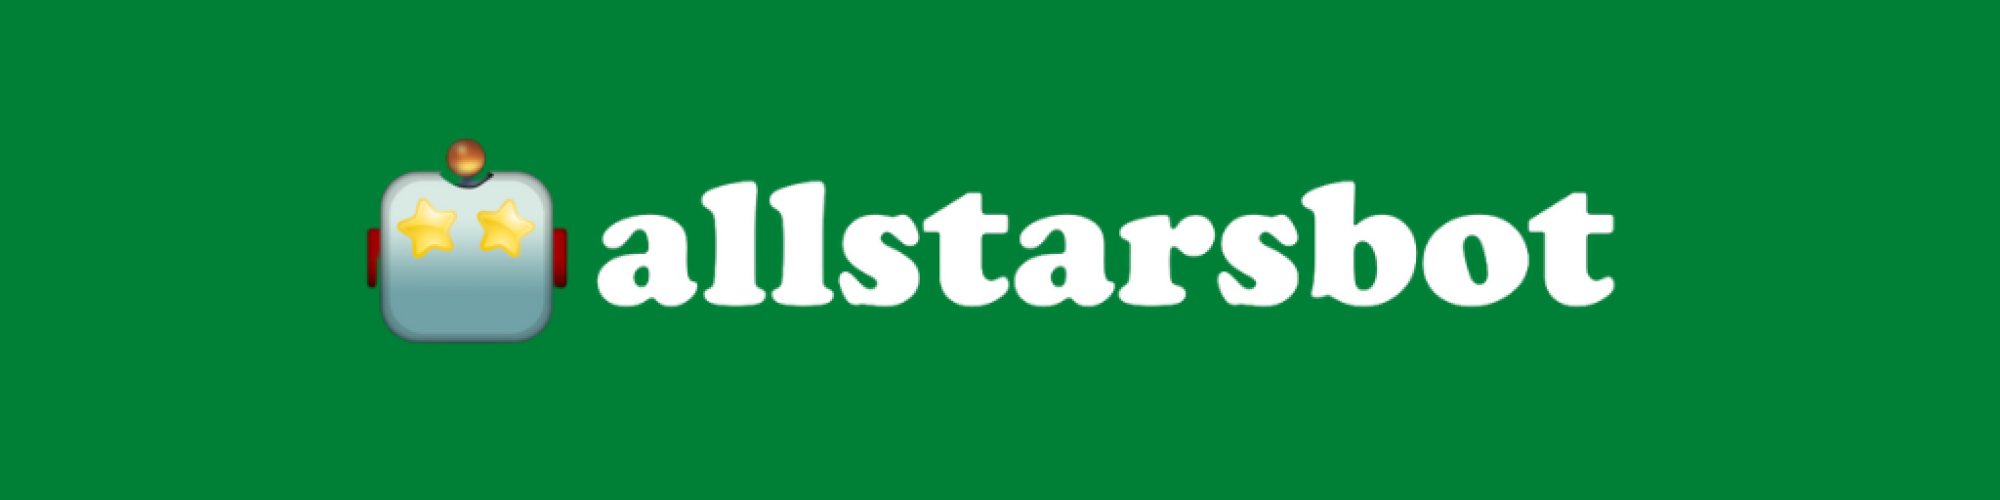 AllstarsBot